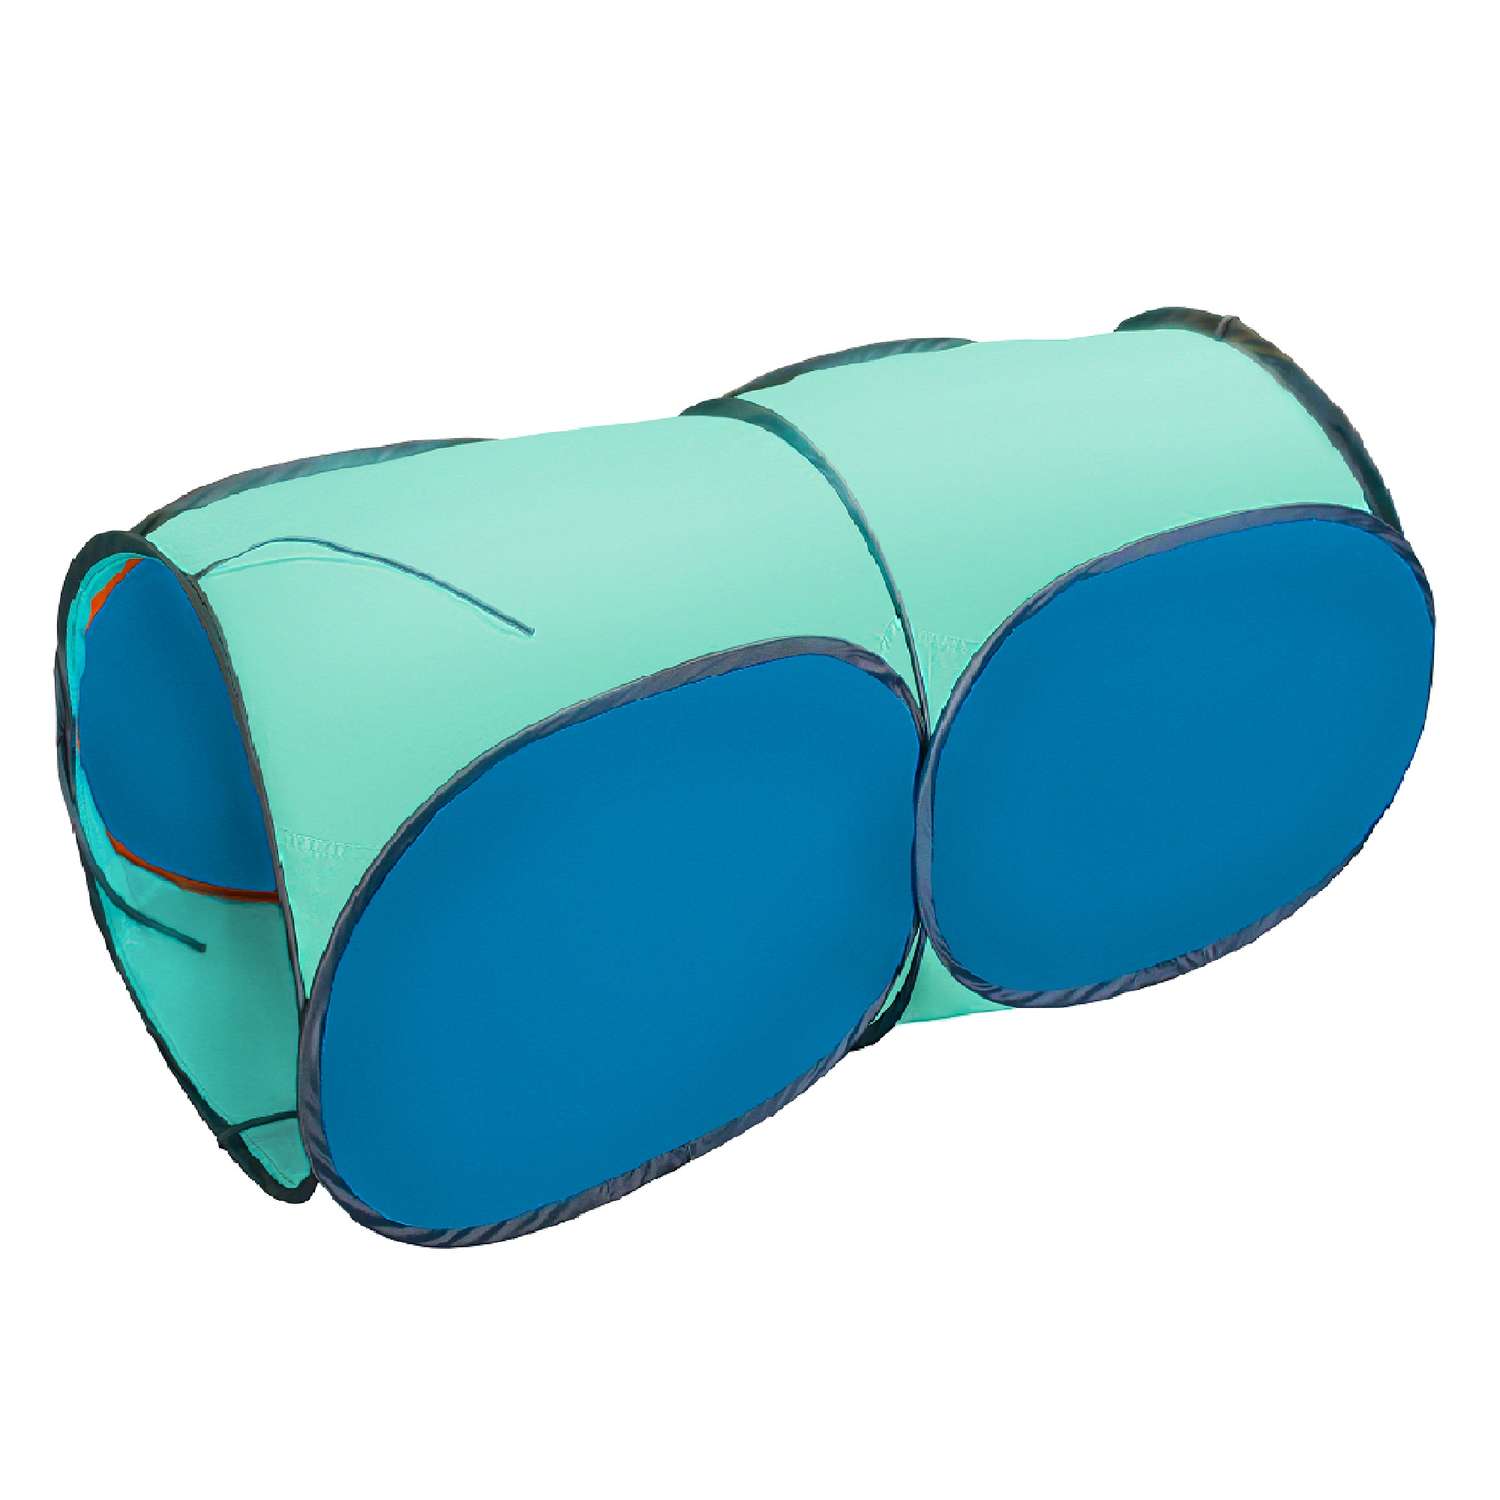 Тоннель для палатки Belon familia двухсекционный цвет голубой бирюзовый - фото 1